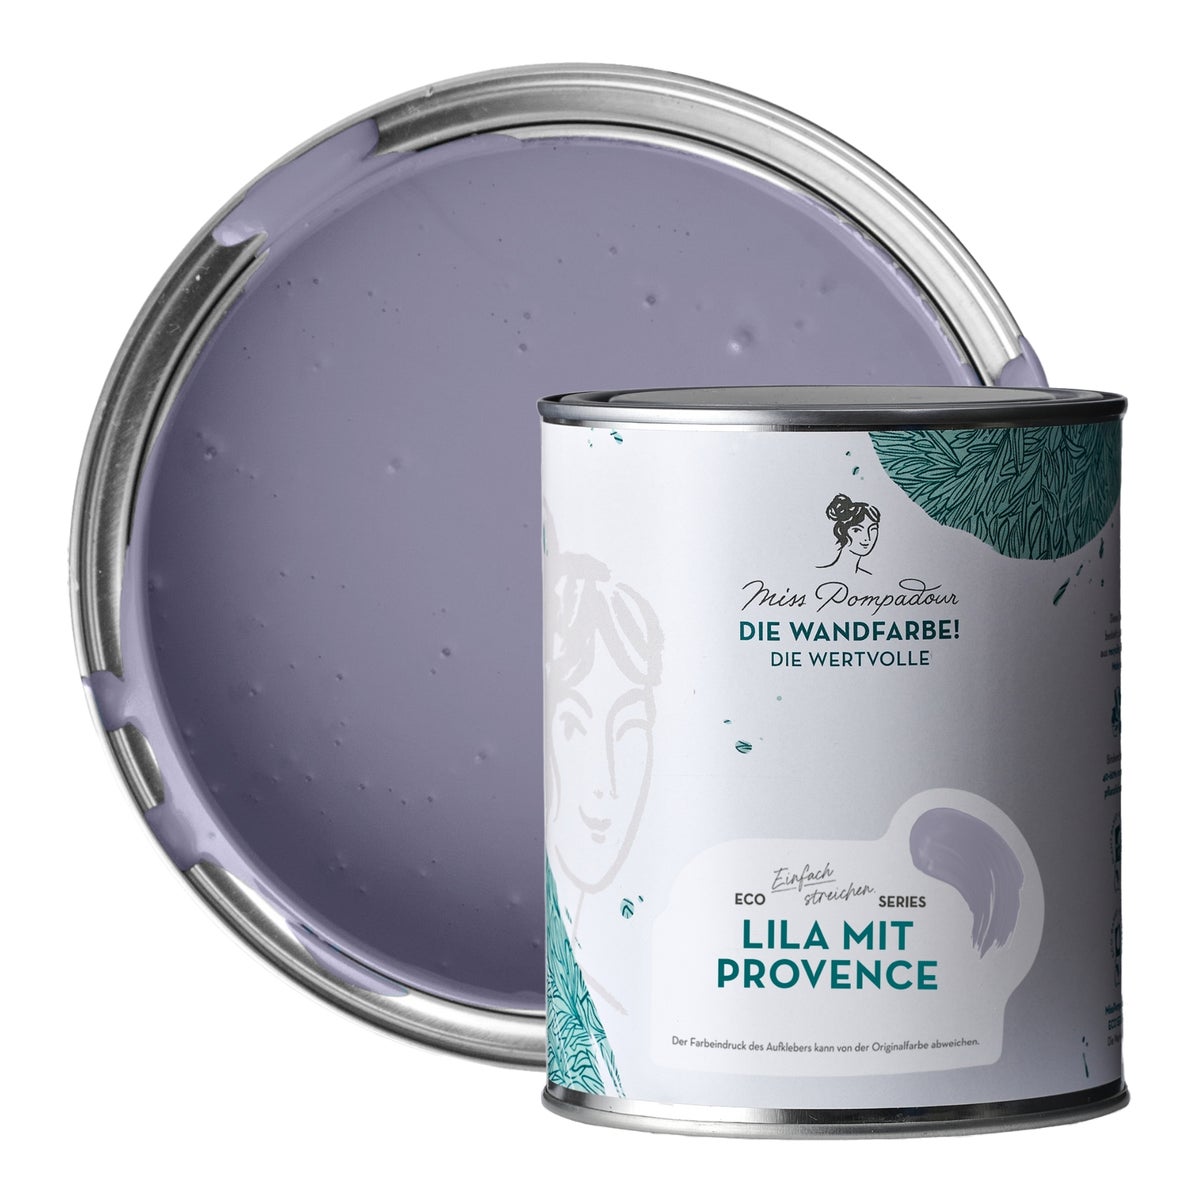 MissPompadour edelmatte Wandfarbe 1L Lila mit Provence - sehr hohe Deckkraft - geruchsneutrale, spritzfreie Farbe - atmungsaktive, wasserbasierte Innenfarbe/Deckenfarbe - Die Wertvolle